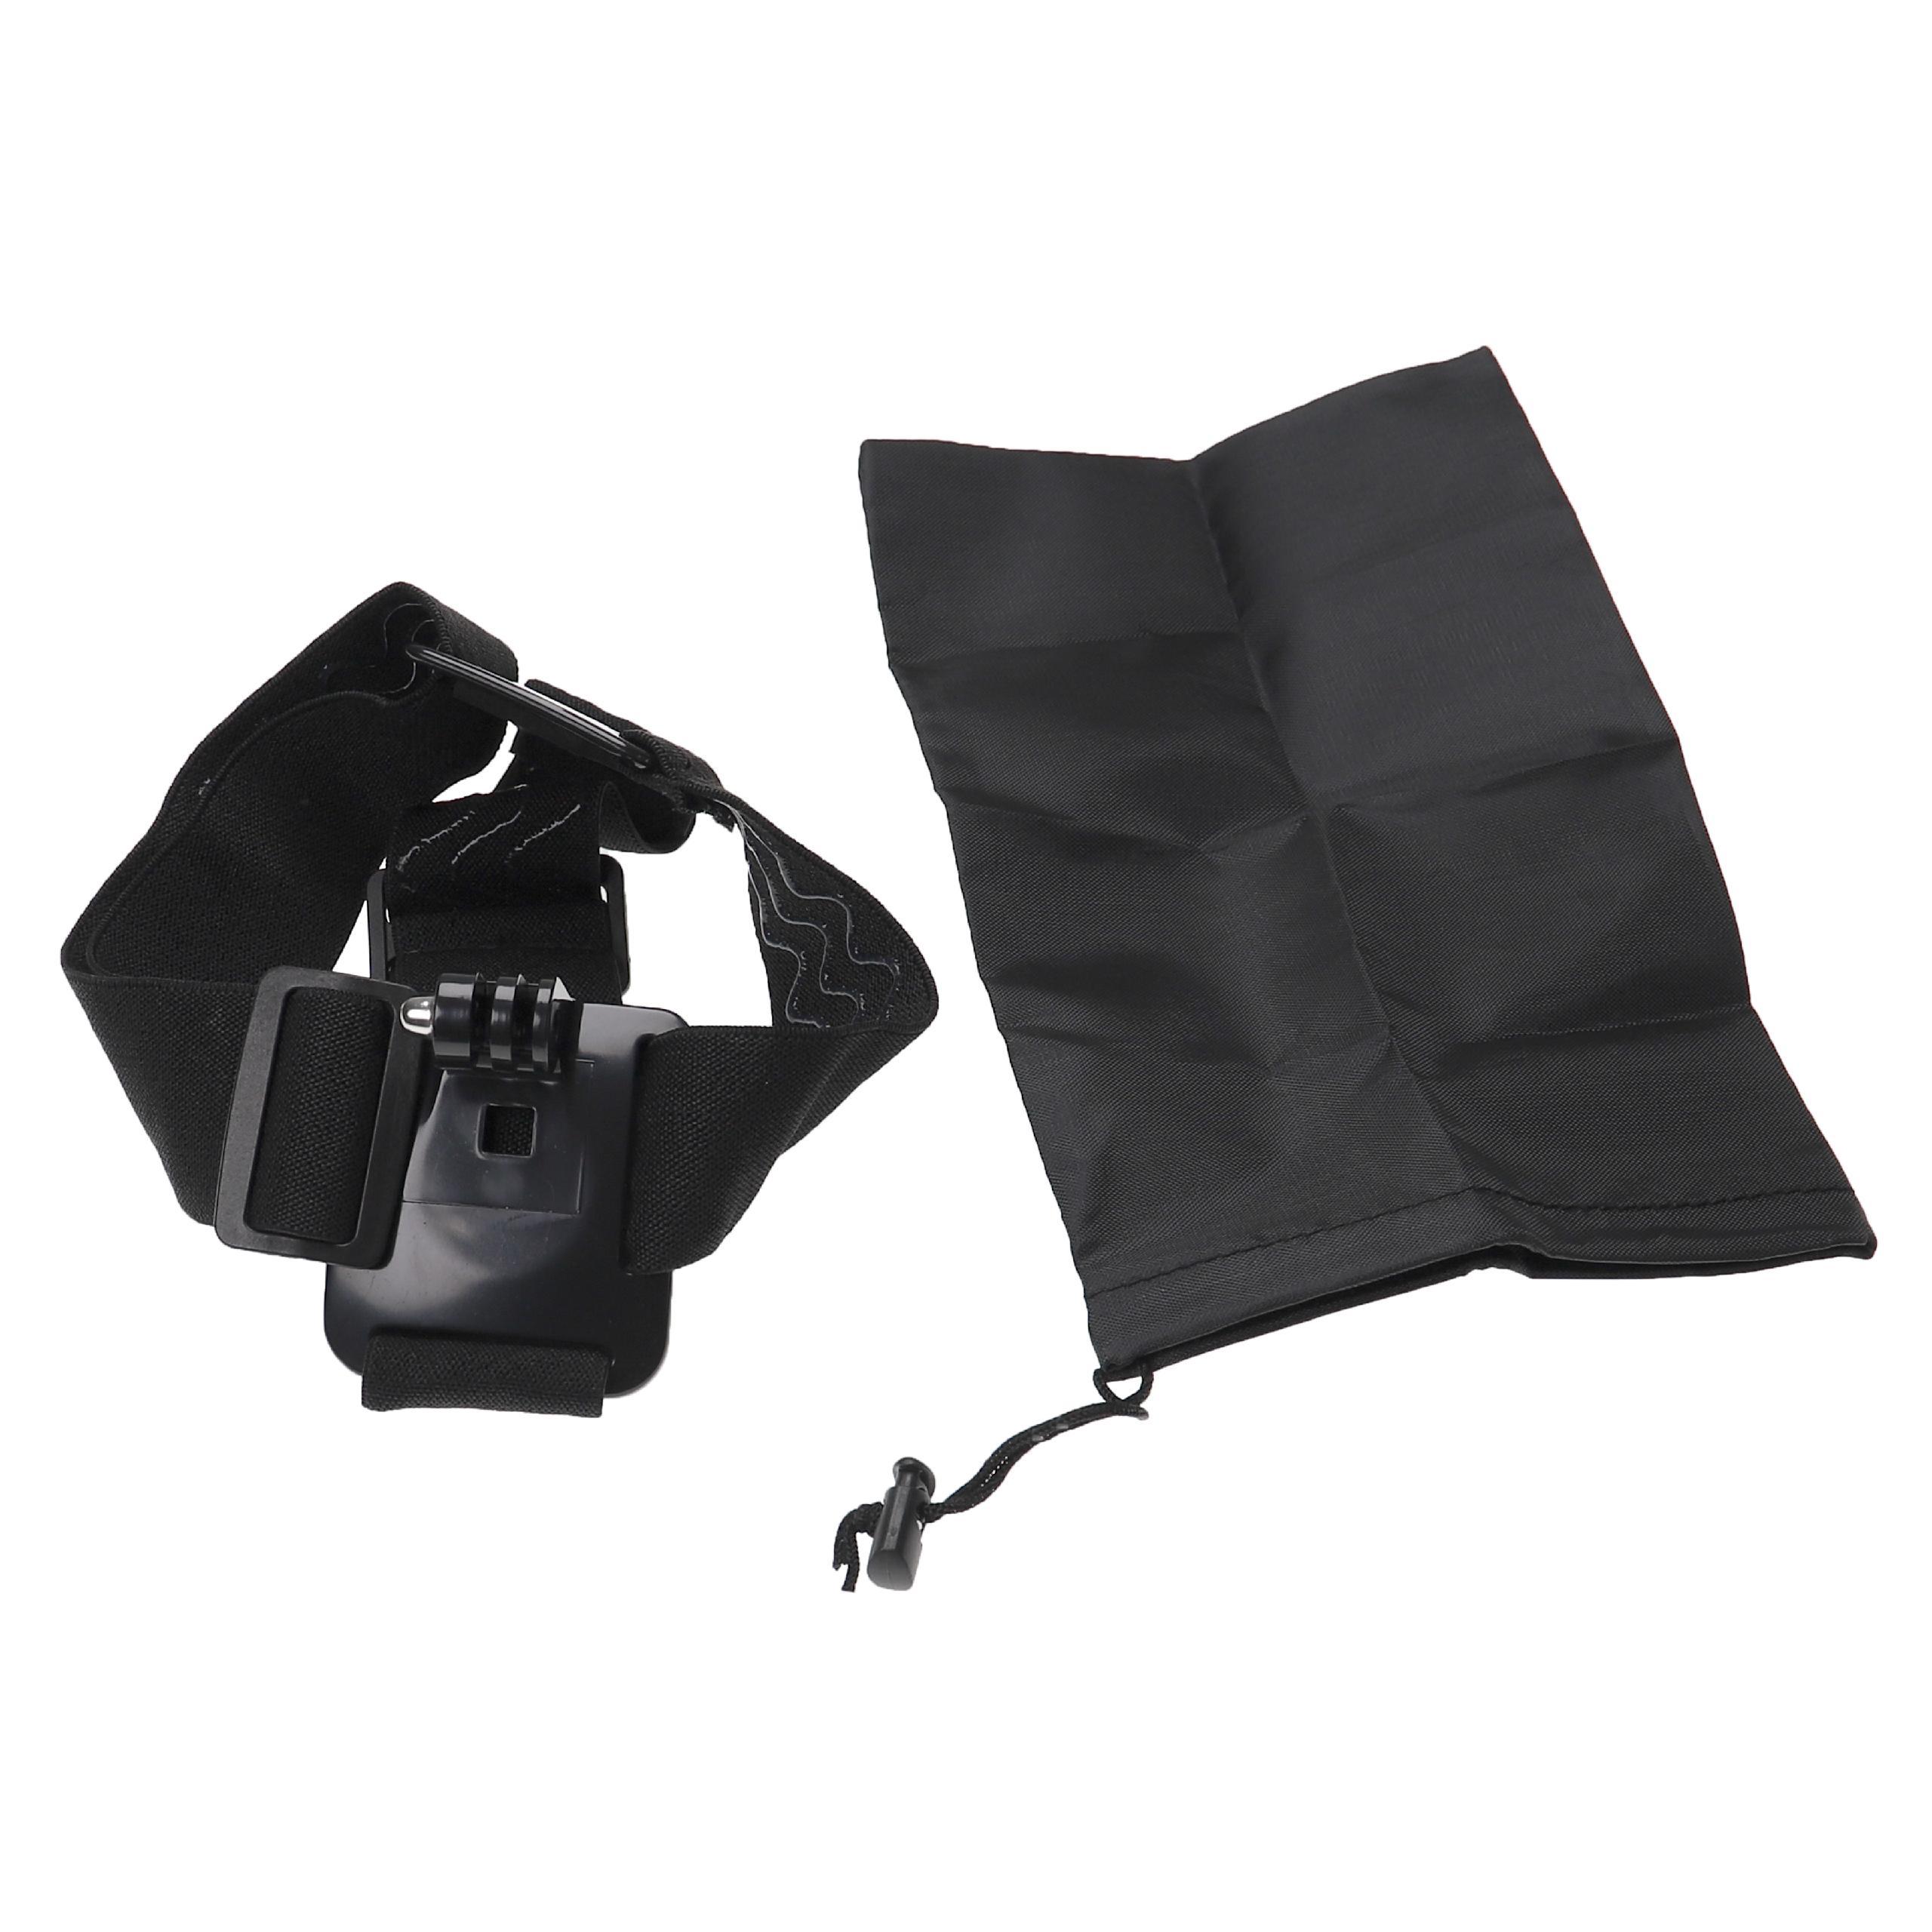 vhbw Bandeau frontal caméra d'action - Sangle serre-tête, inclus sac de transport noir